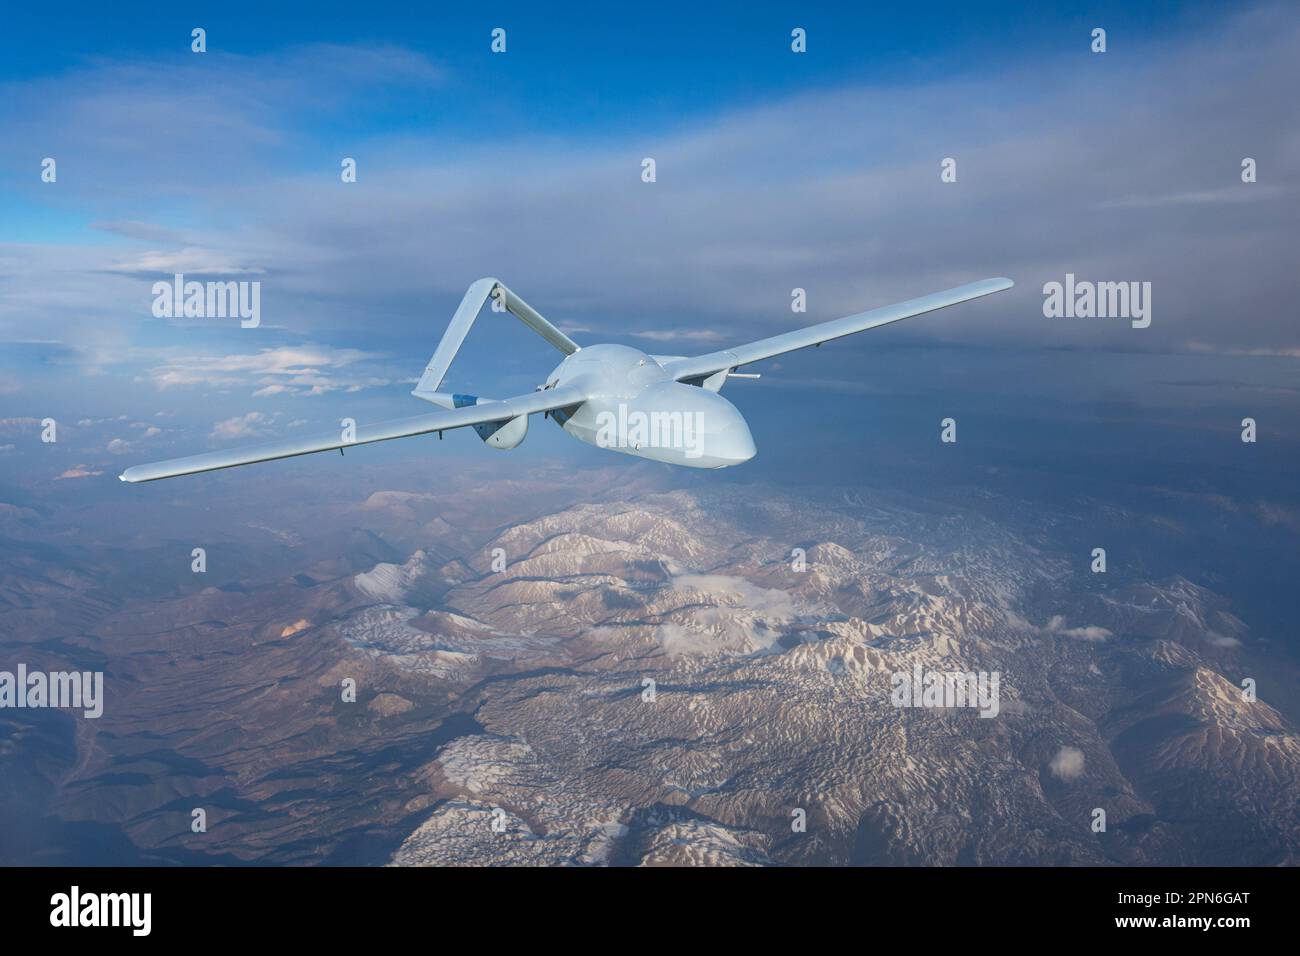 Drone militaire sans pilote uav volant dans les airs, vol de reconnaissance au-dessus du territoire au-dessus des montagnes enneigées relief des collines Banque D'Images